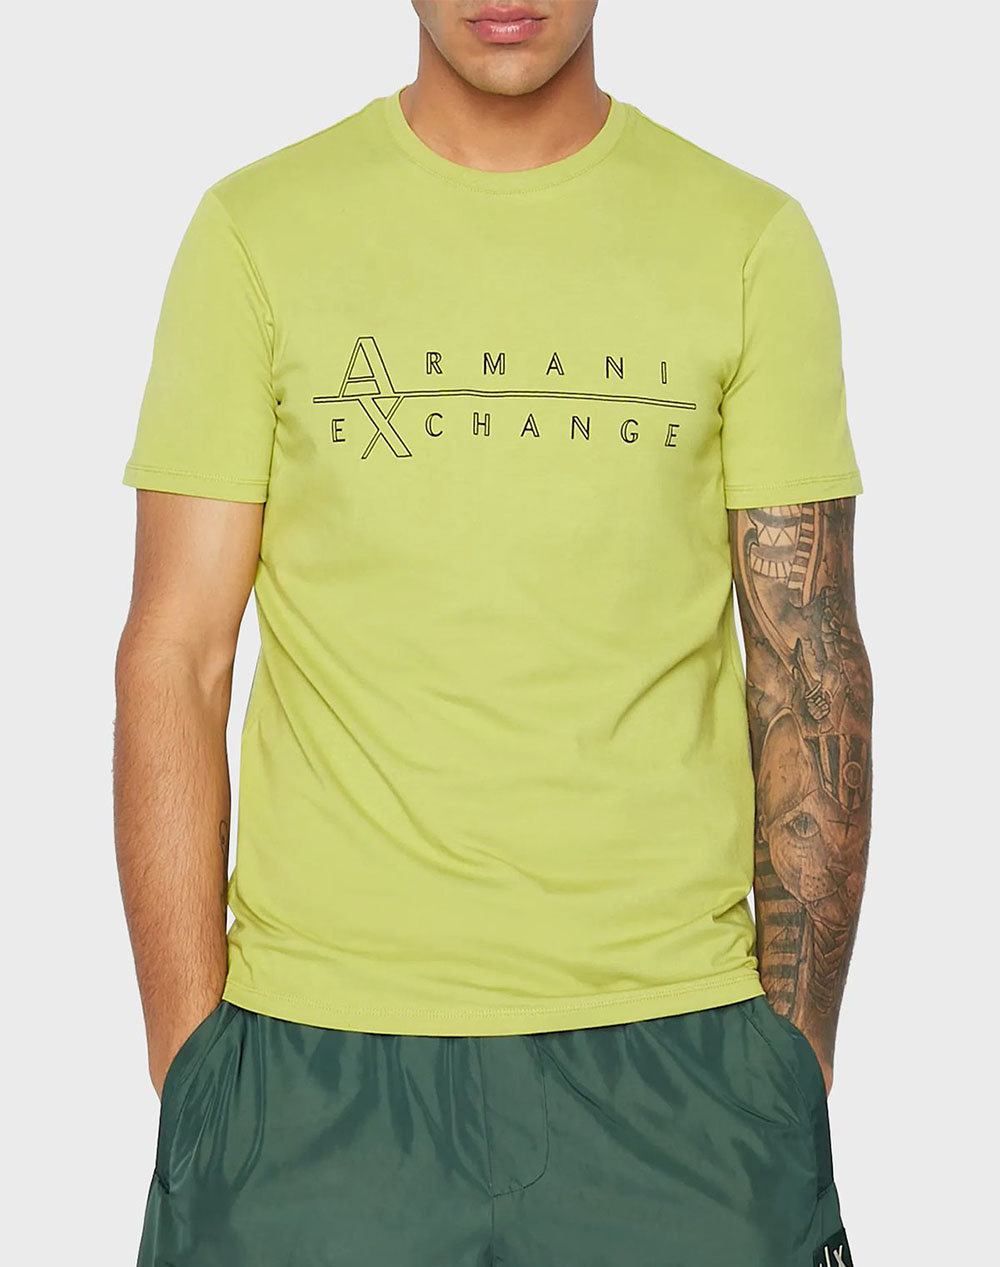 ARMANI EXCHANGE T-SHIRT - LawnGreen 